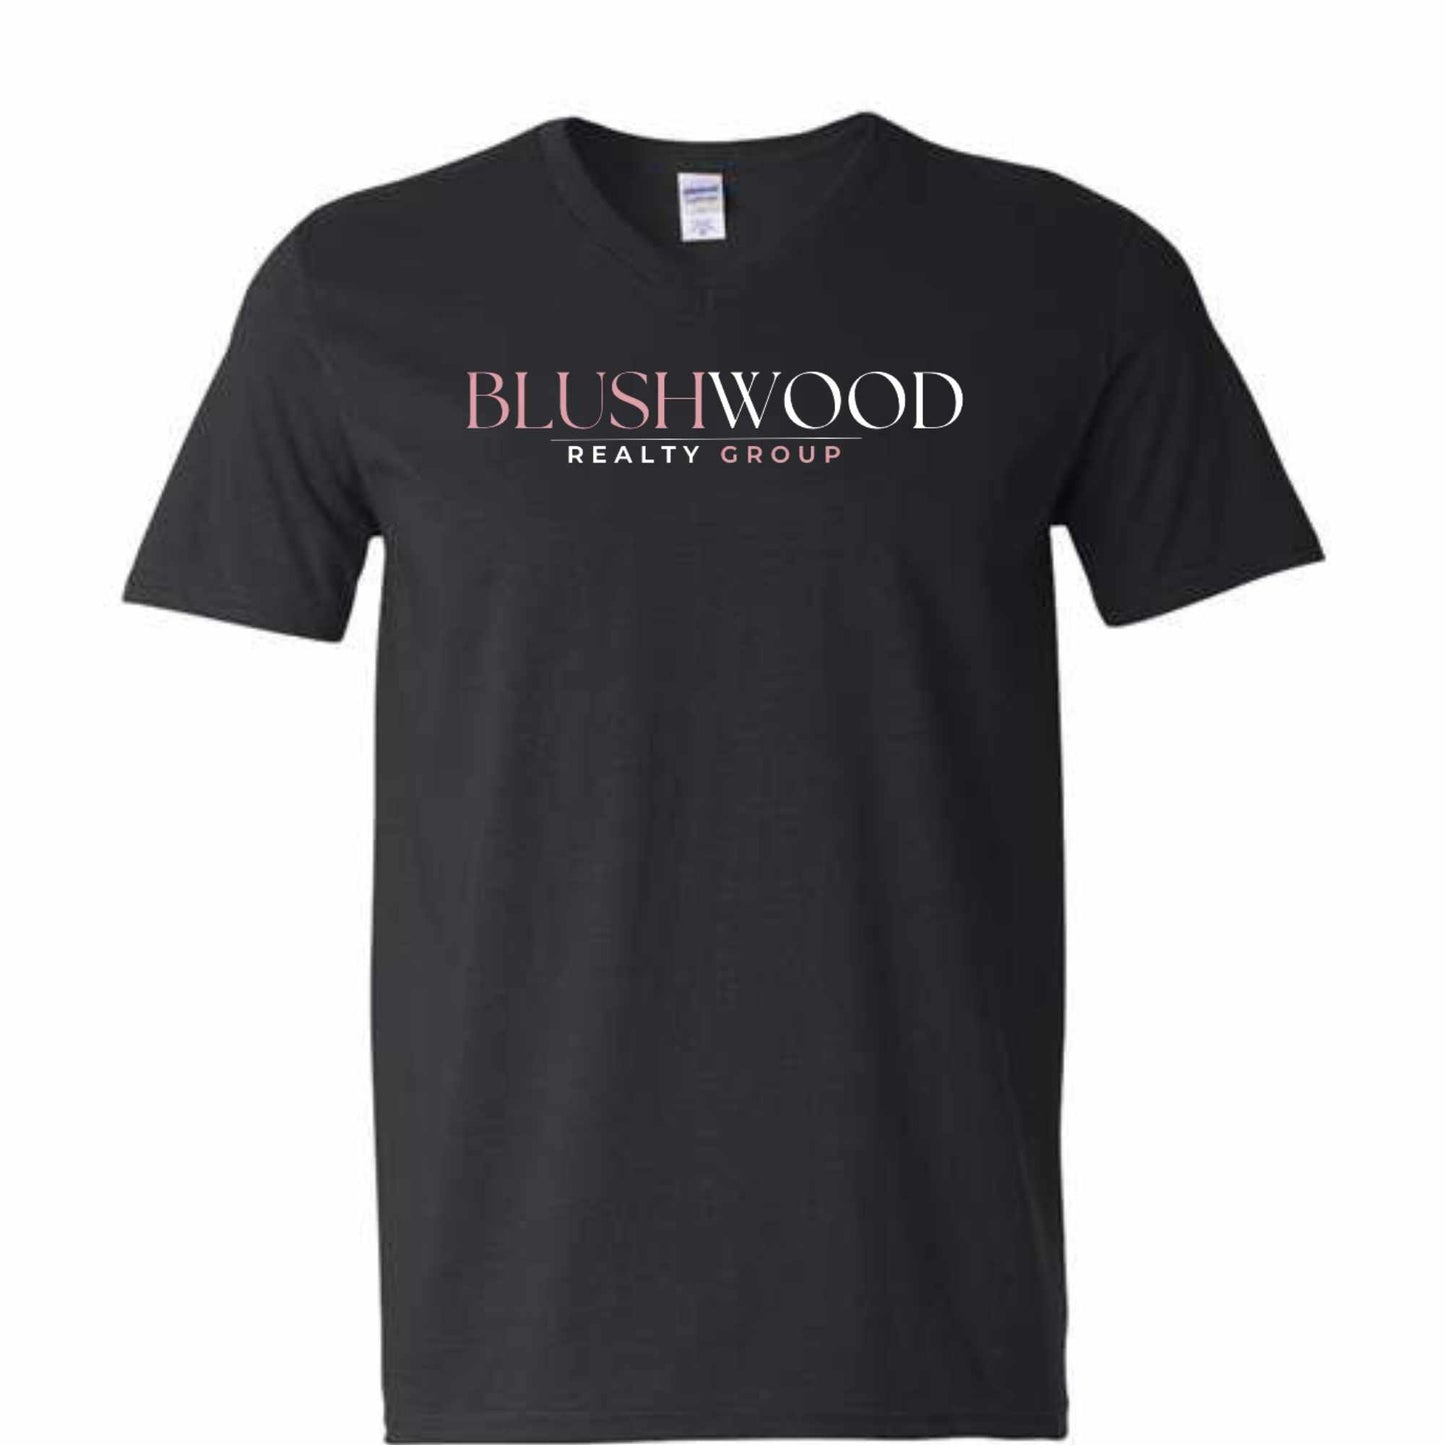 Blushwood V-Neck Shirts, Unisex Fit